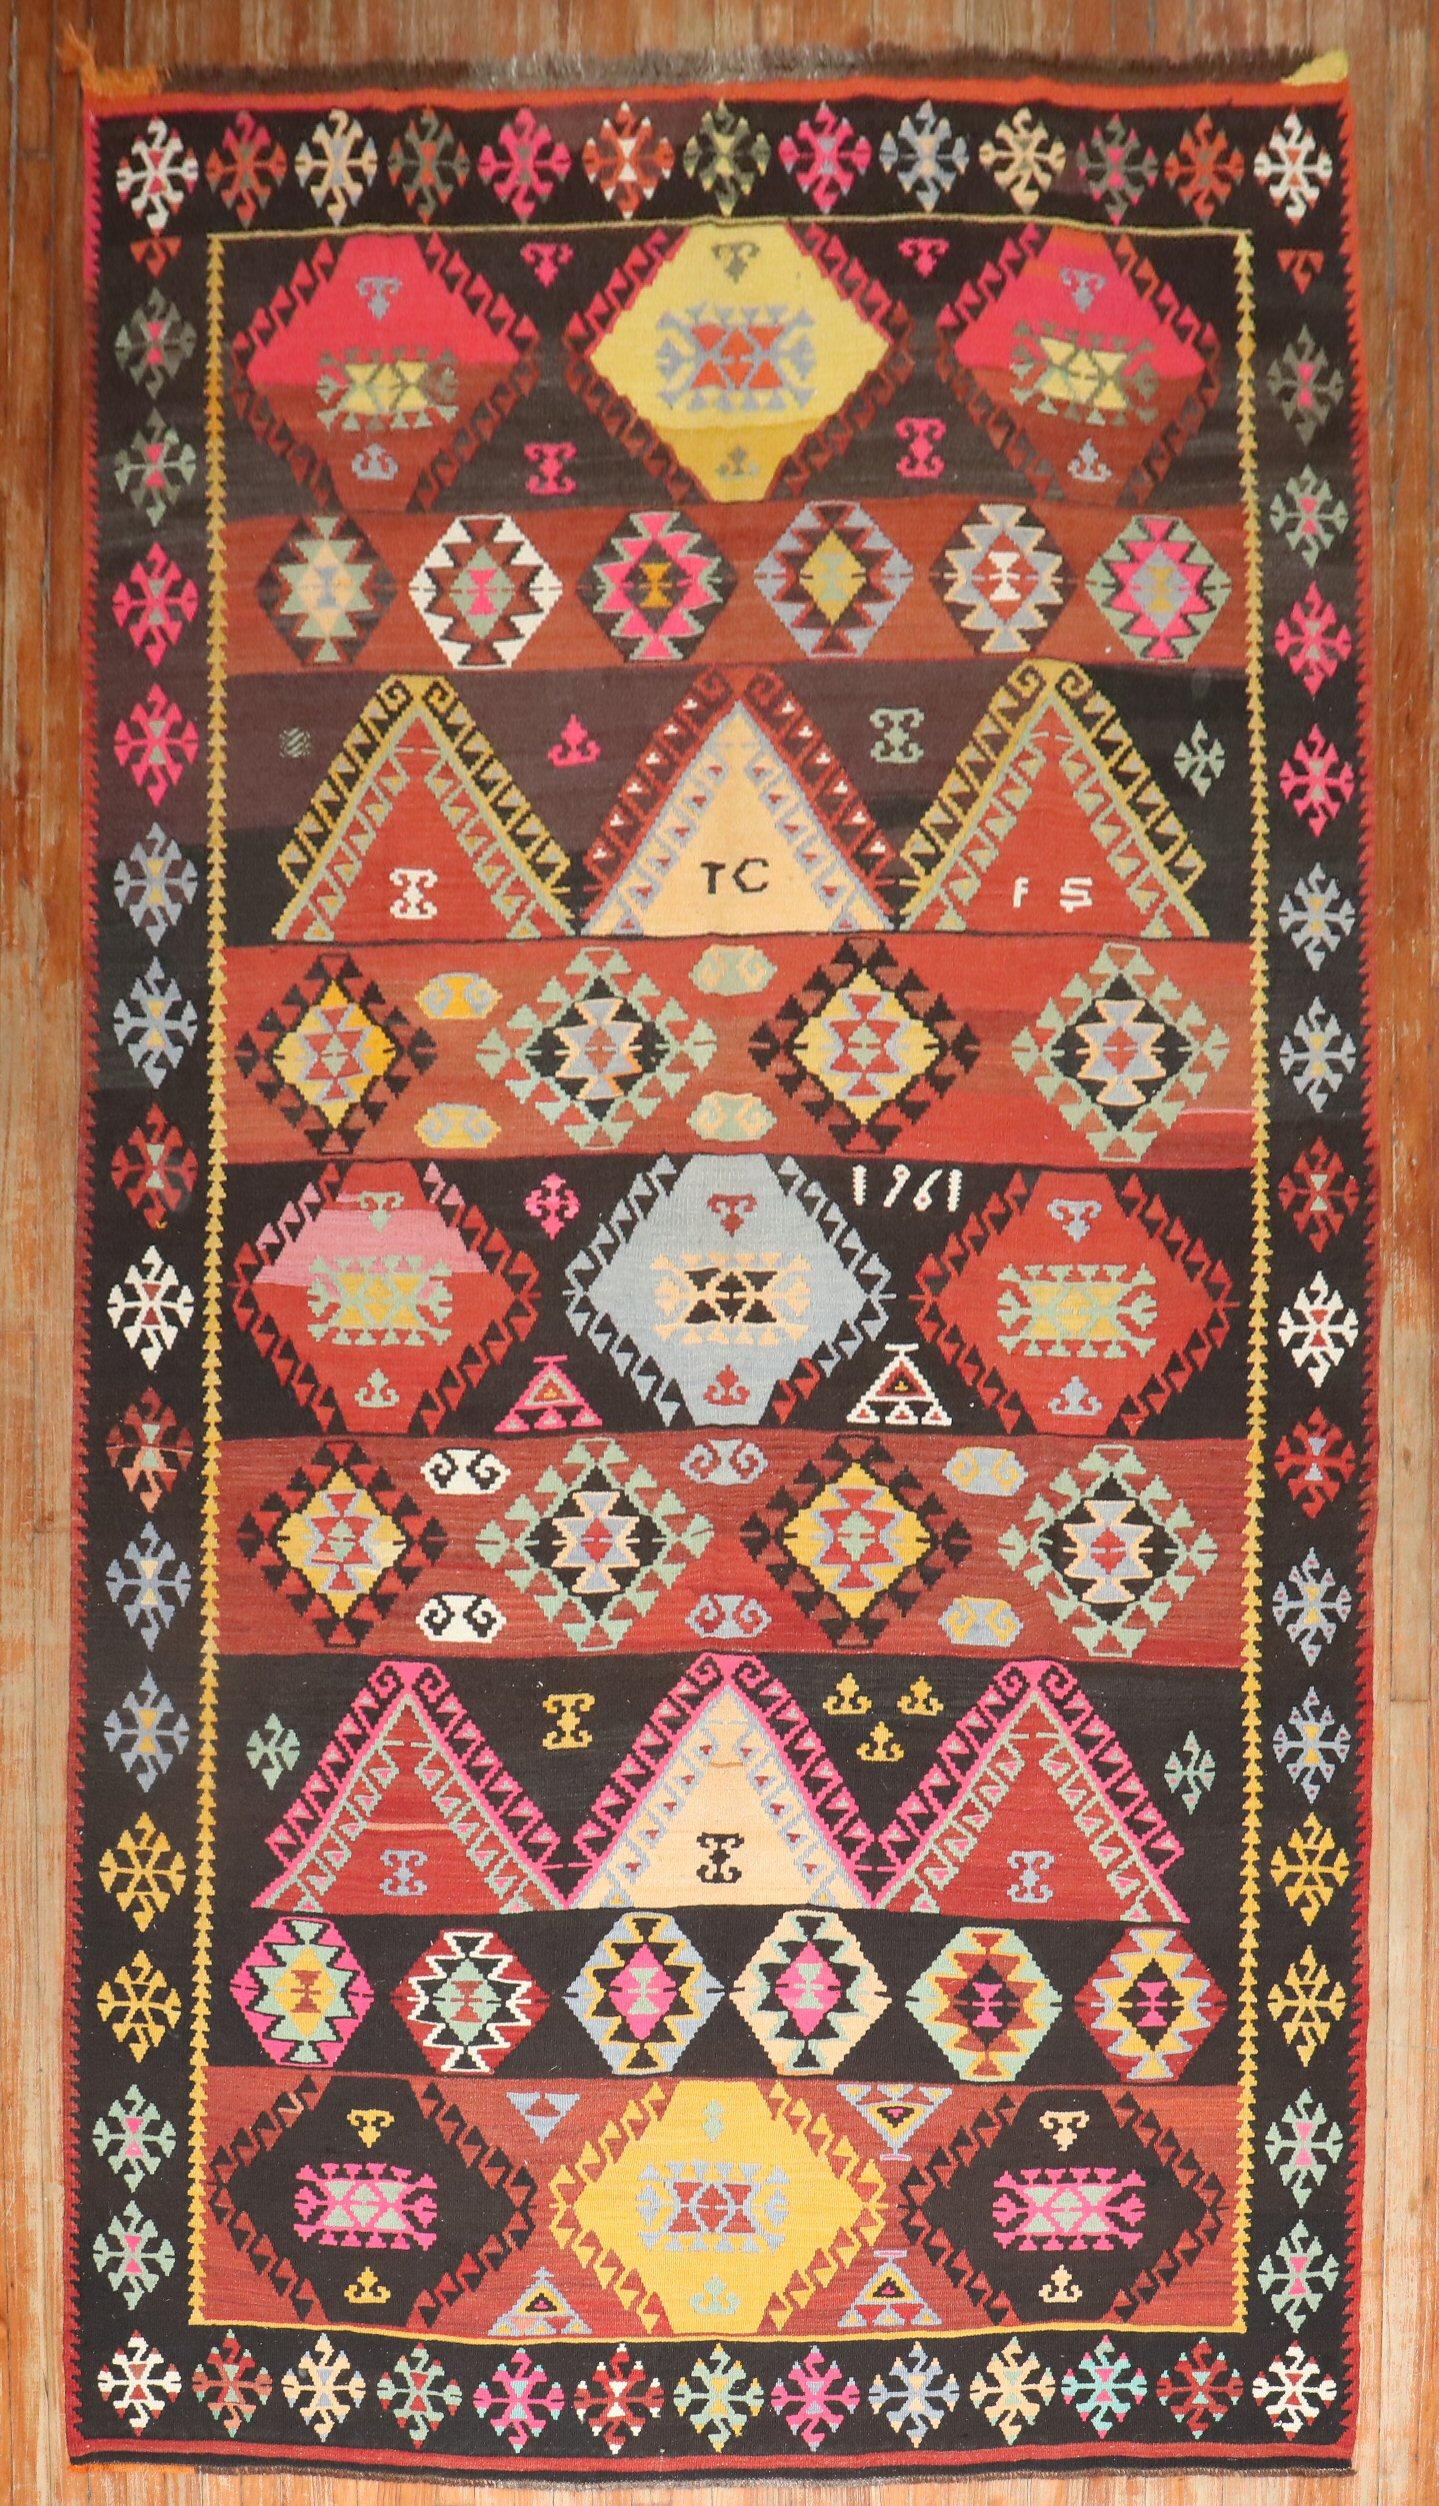 Kilim géométrique turc réalisé dans un format galerie du 3e quart du 20e siècle.

Mesures : 6'2'' x 11'2''

Les Rug & Kilim désignent avant tout un type de tapis tissé à plat qui était produit sans poils noués.
Comme il s'agit de l'une des plus